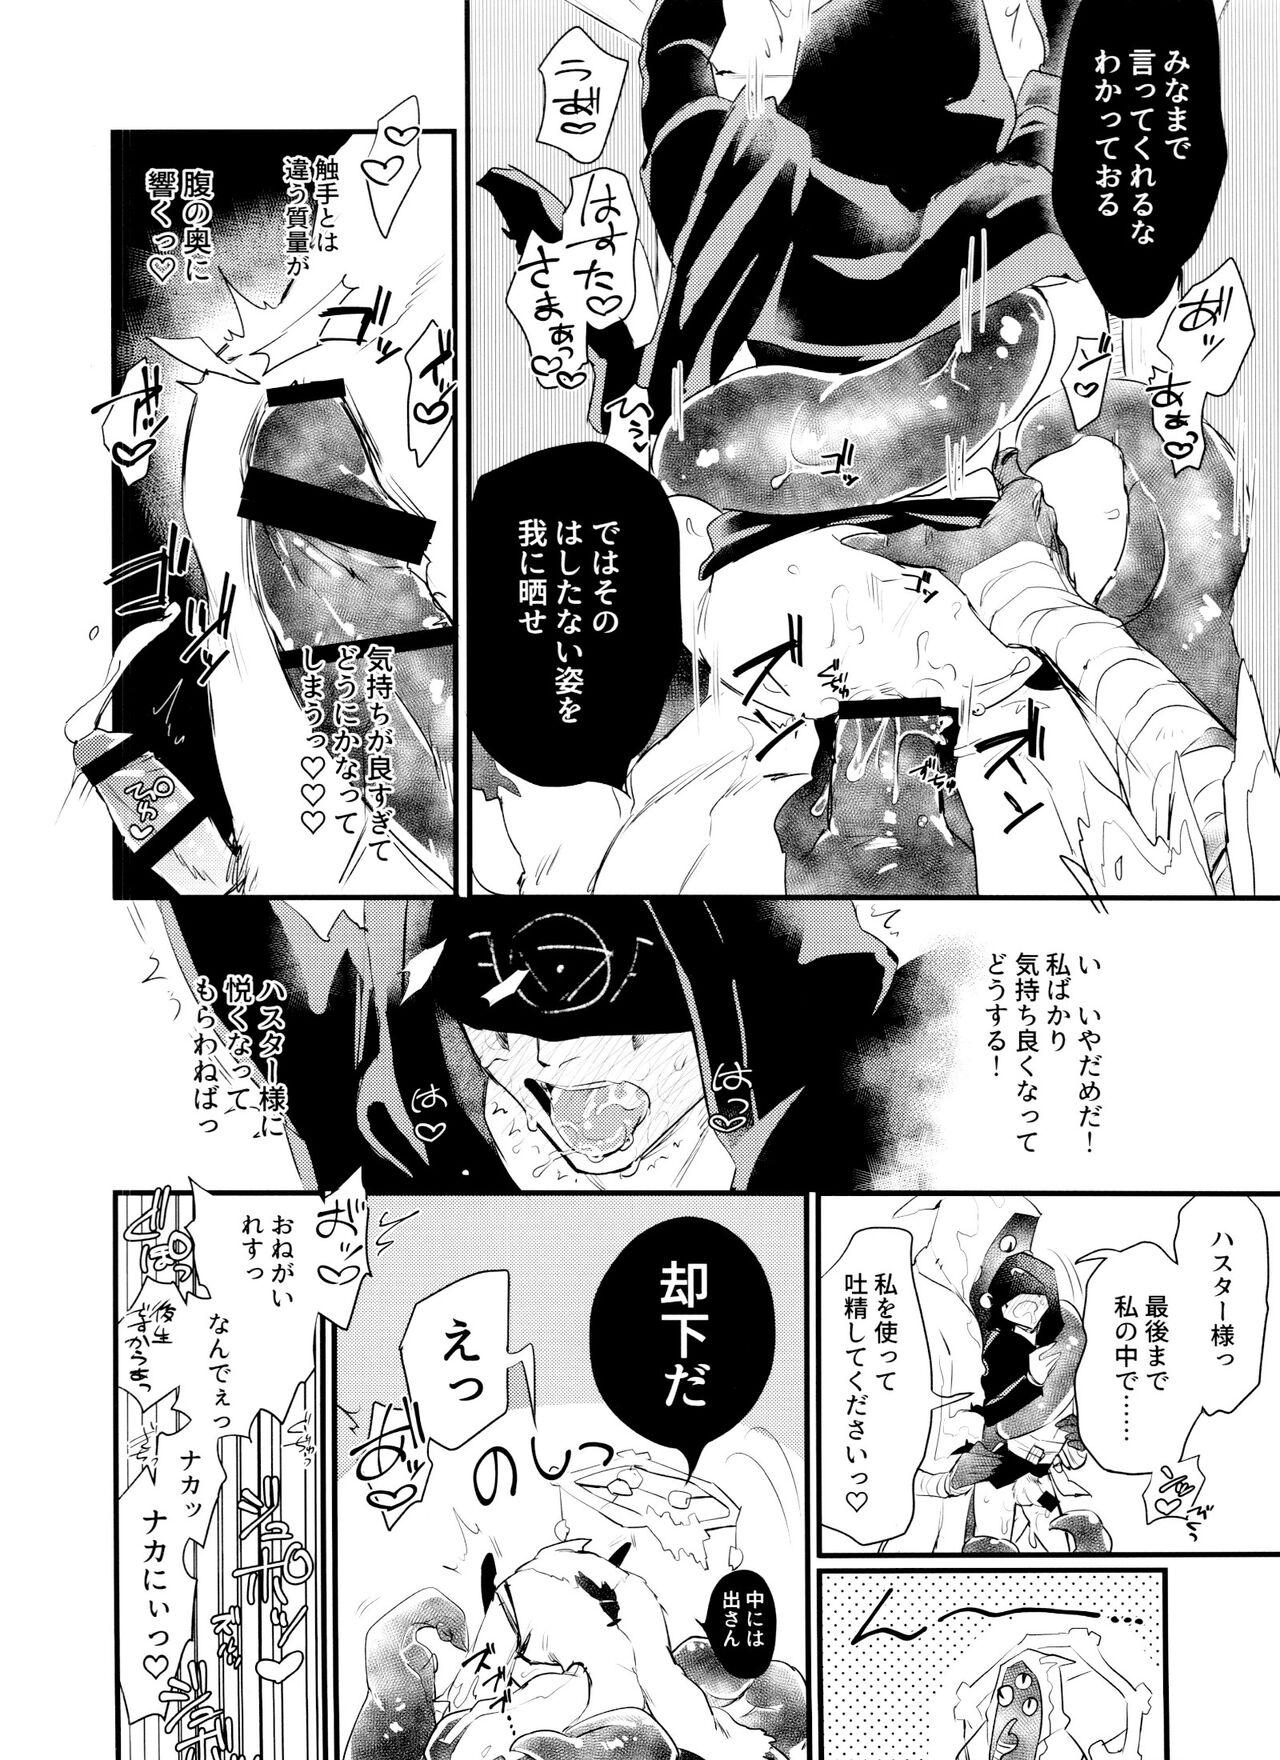 Piroca Anata ni go hōshi sa sete kudasai - Identity v Group - Page 11